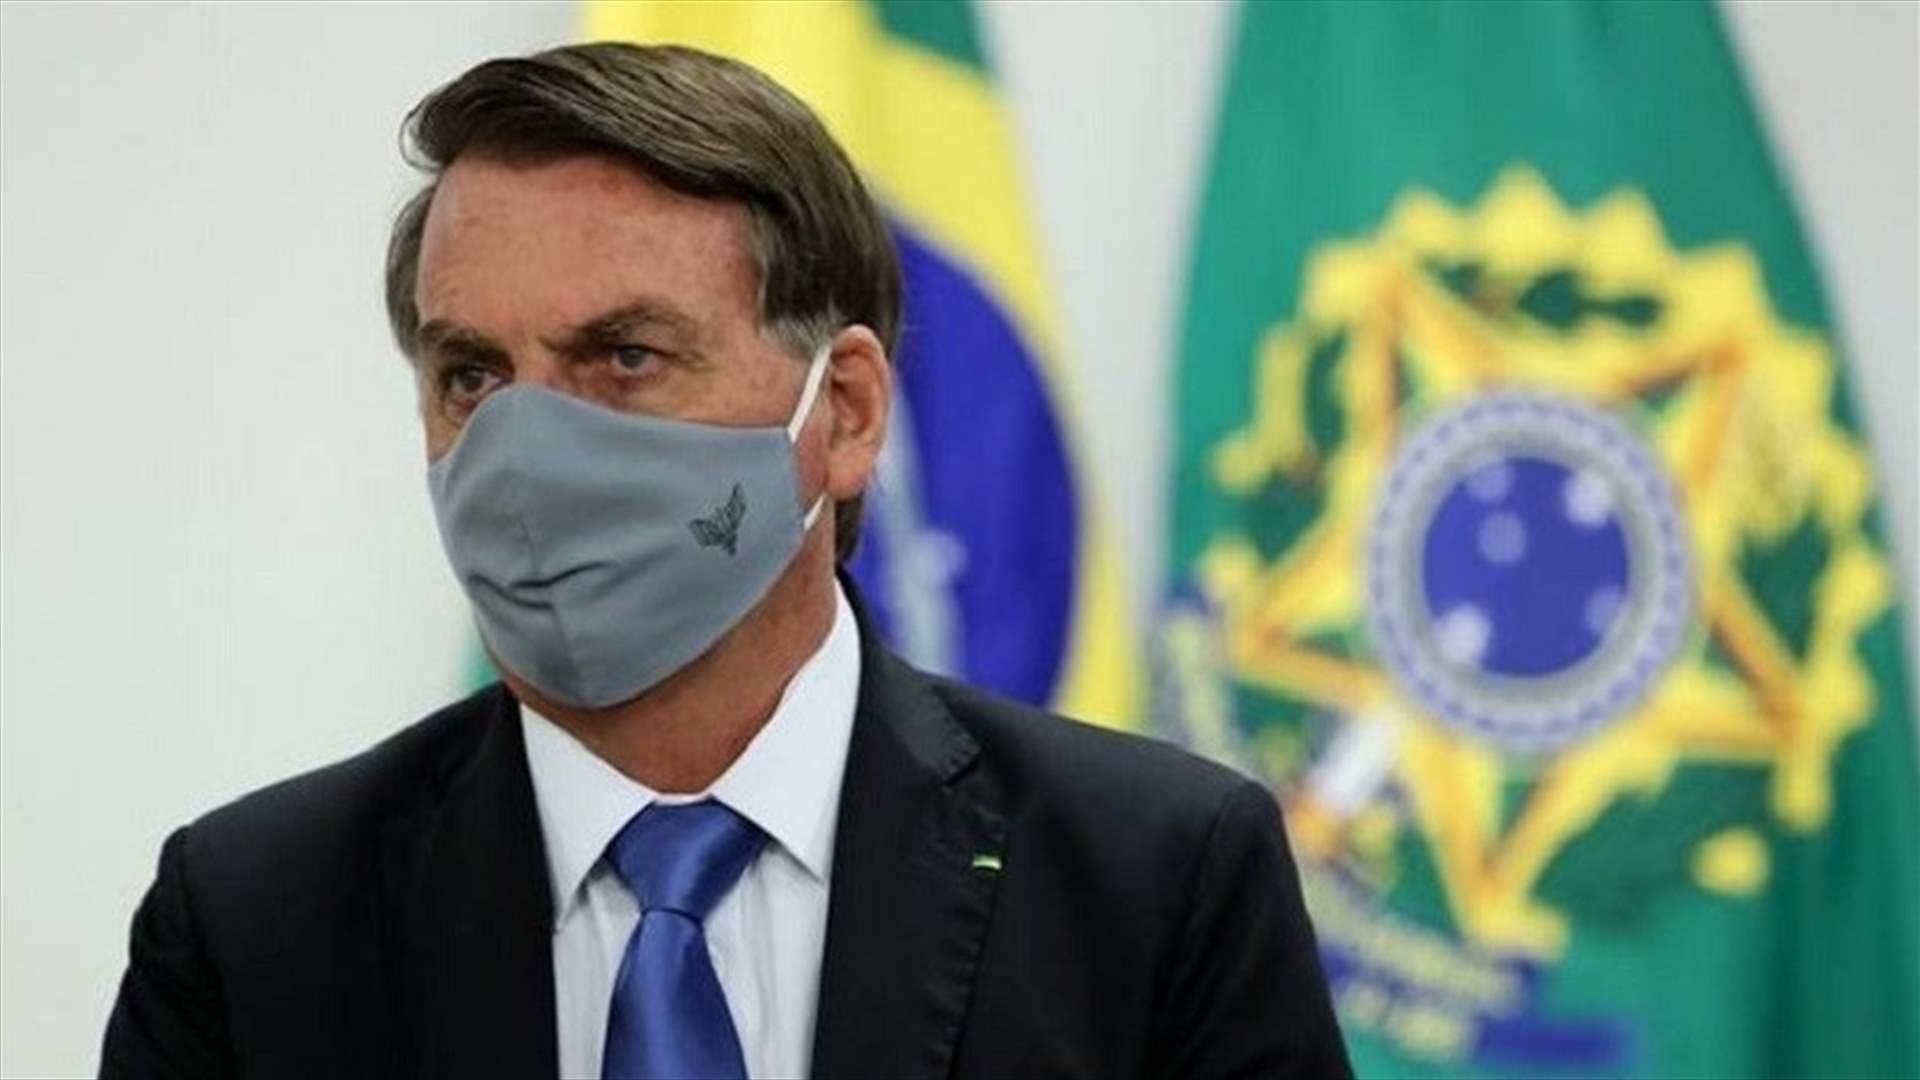 الرئيس البرازيلي يلمح الى ان الصين تسببت بجائحة كورونا